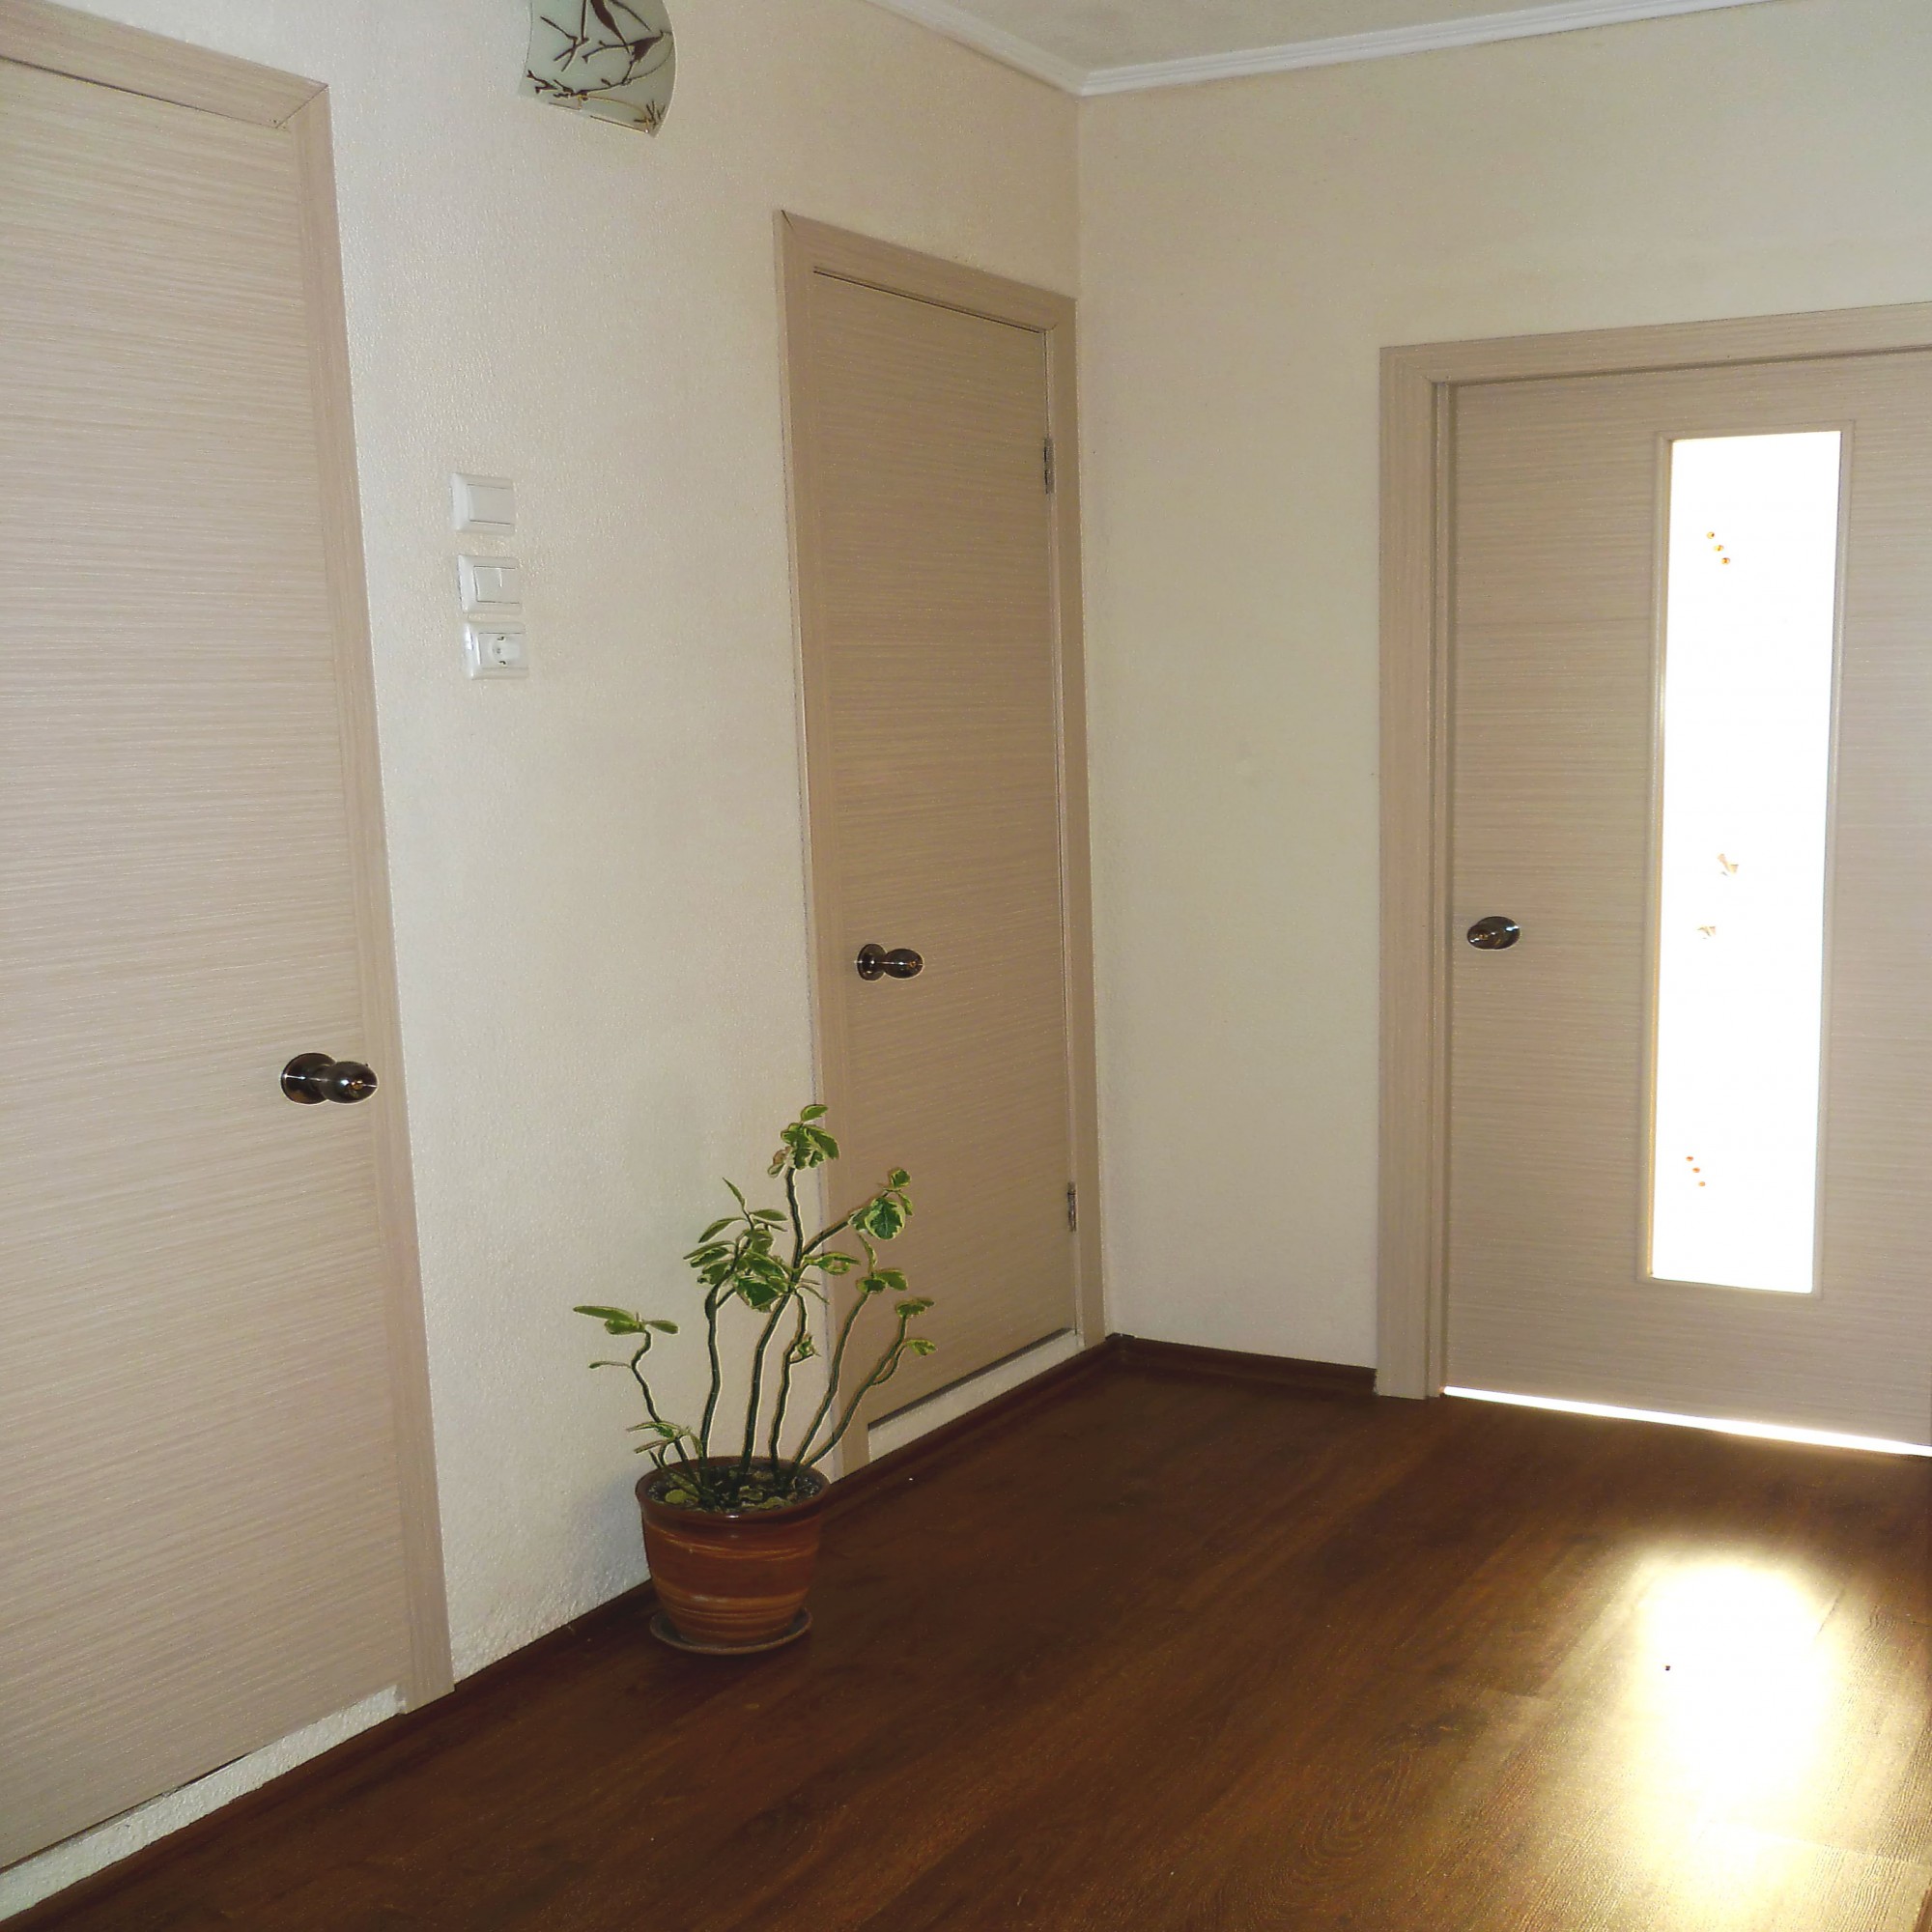 ламинат в интерьере квартиры в сочетании с дверями